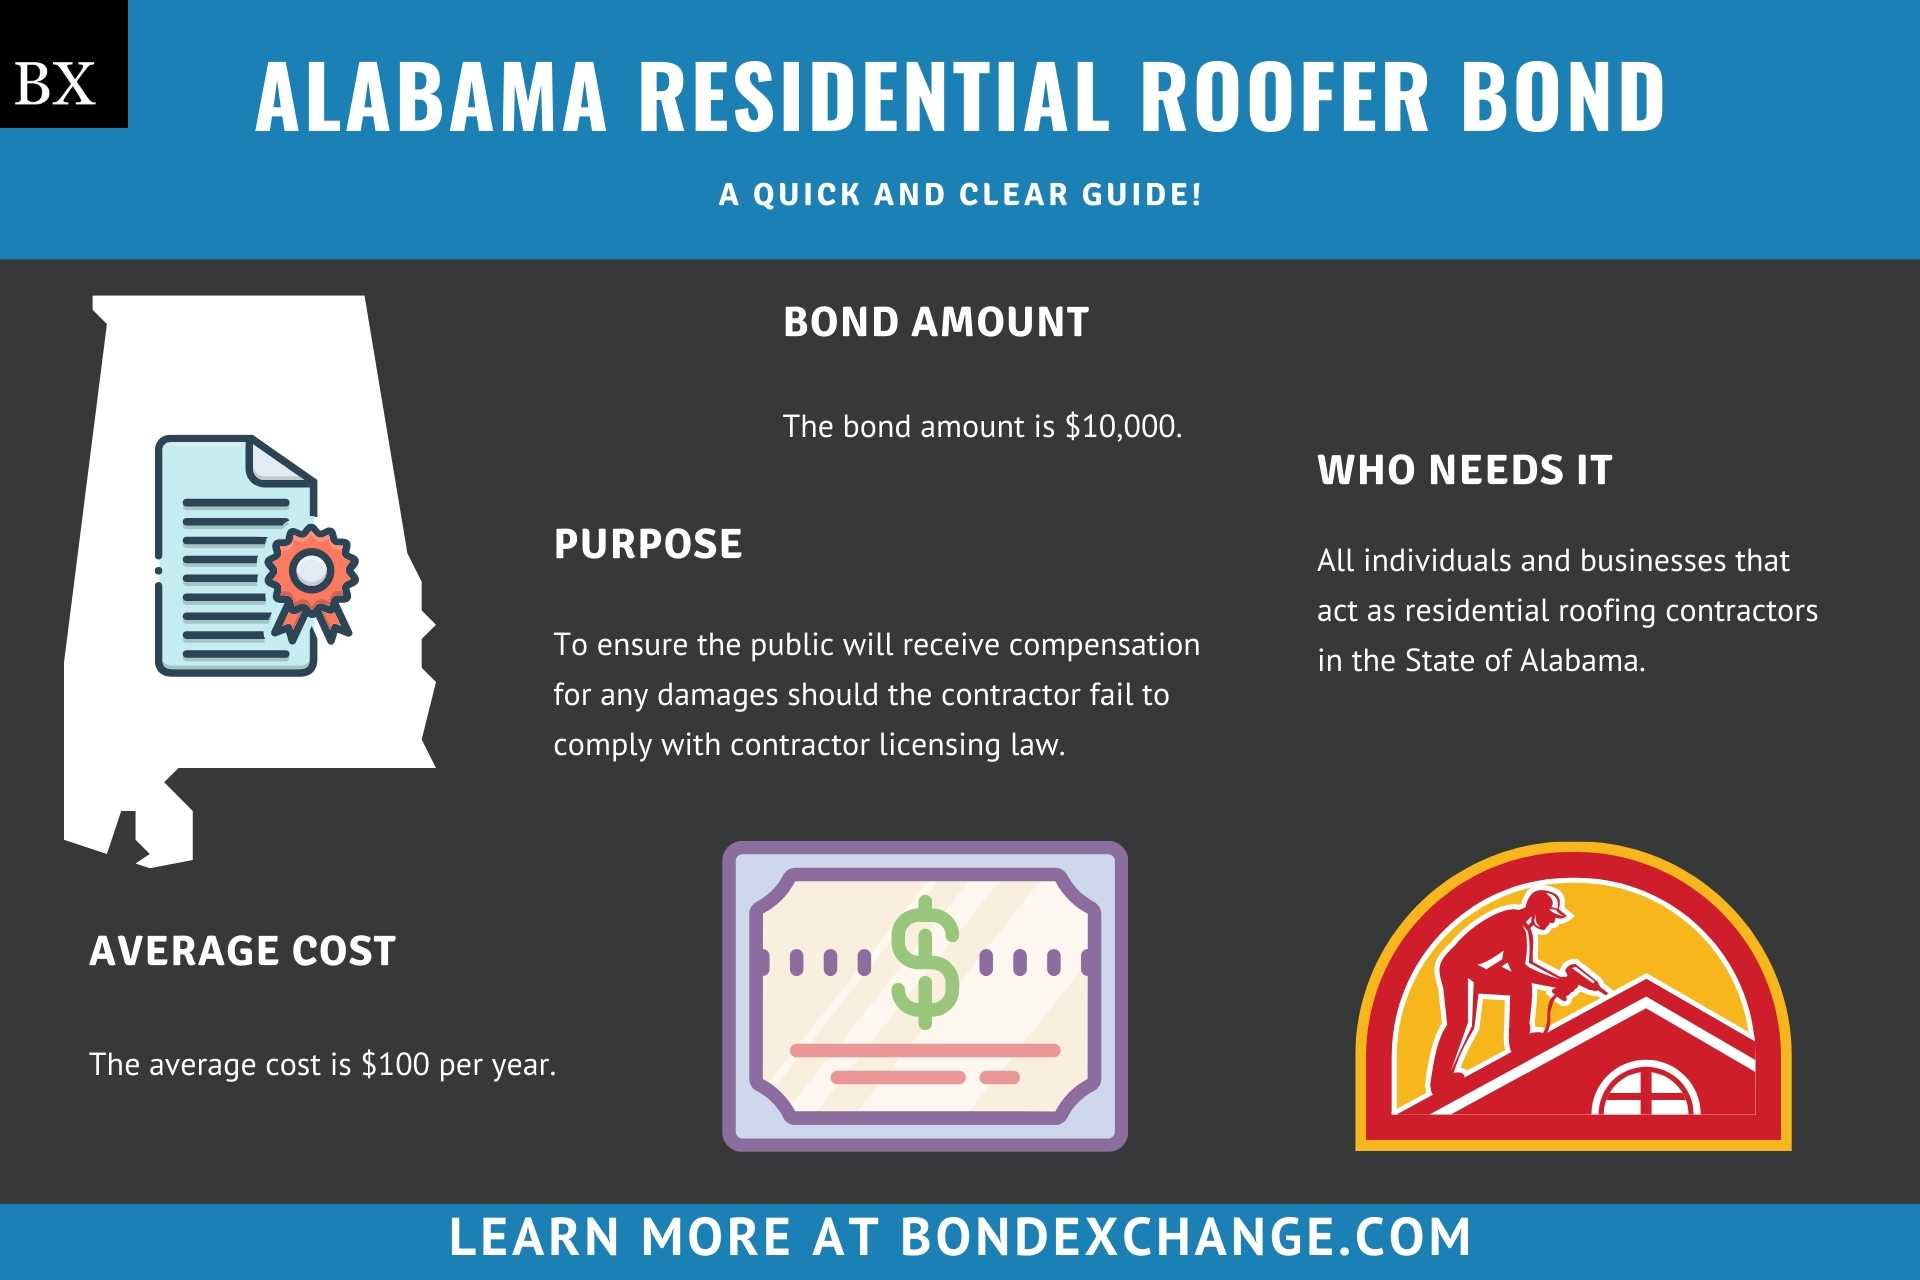 Alabama Residential Roofer